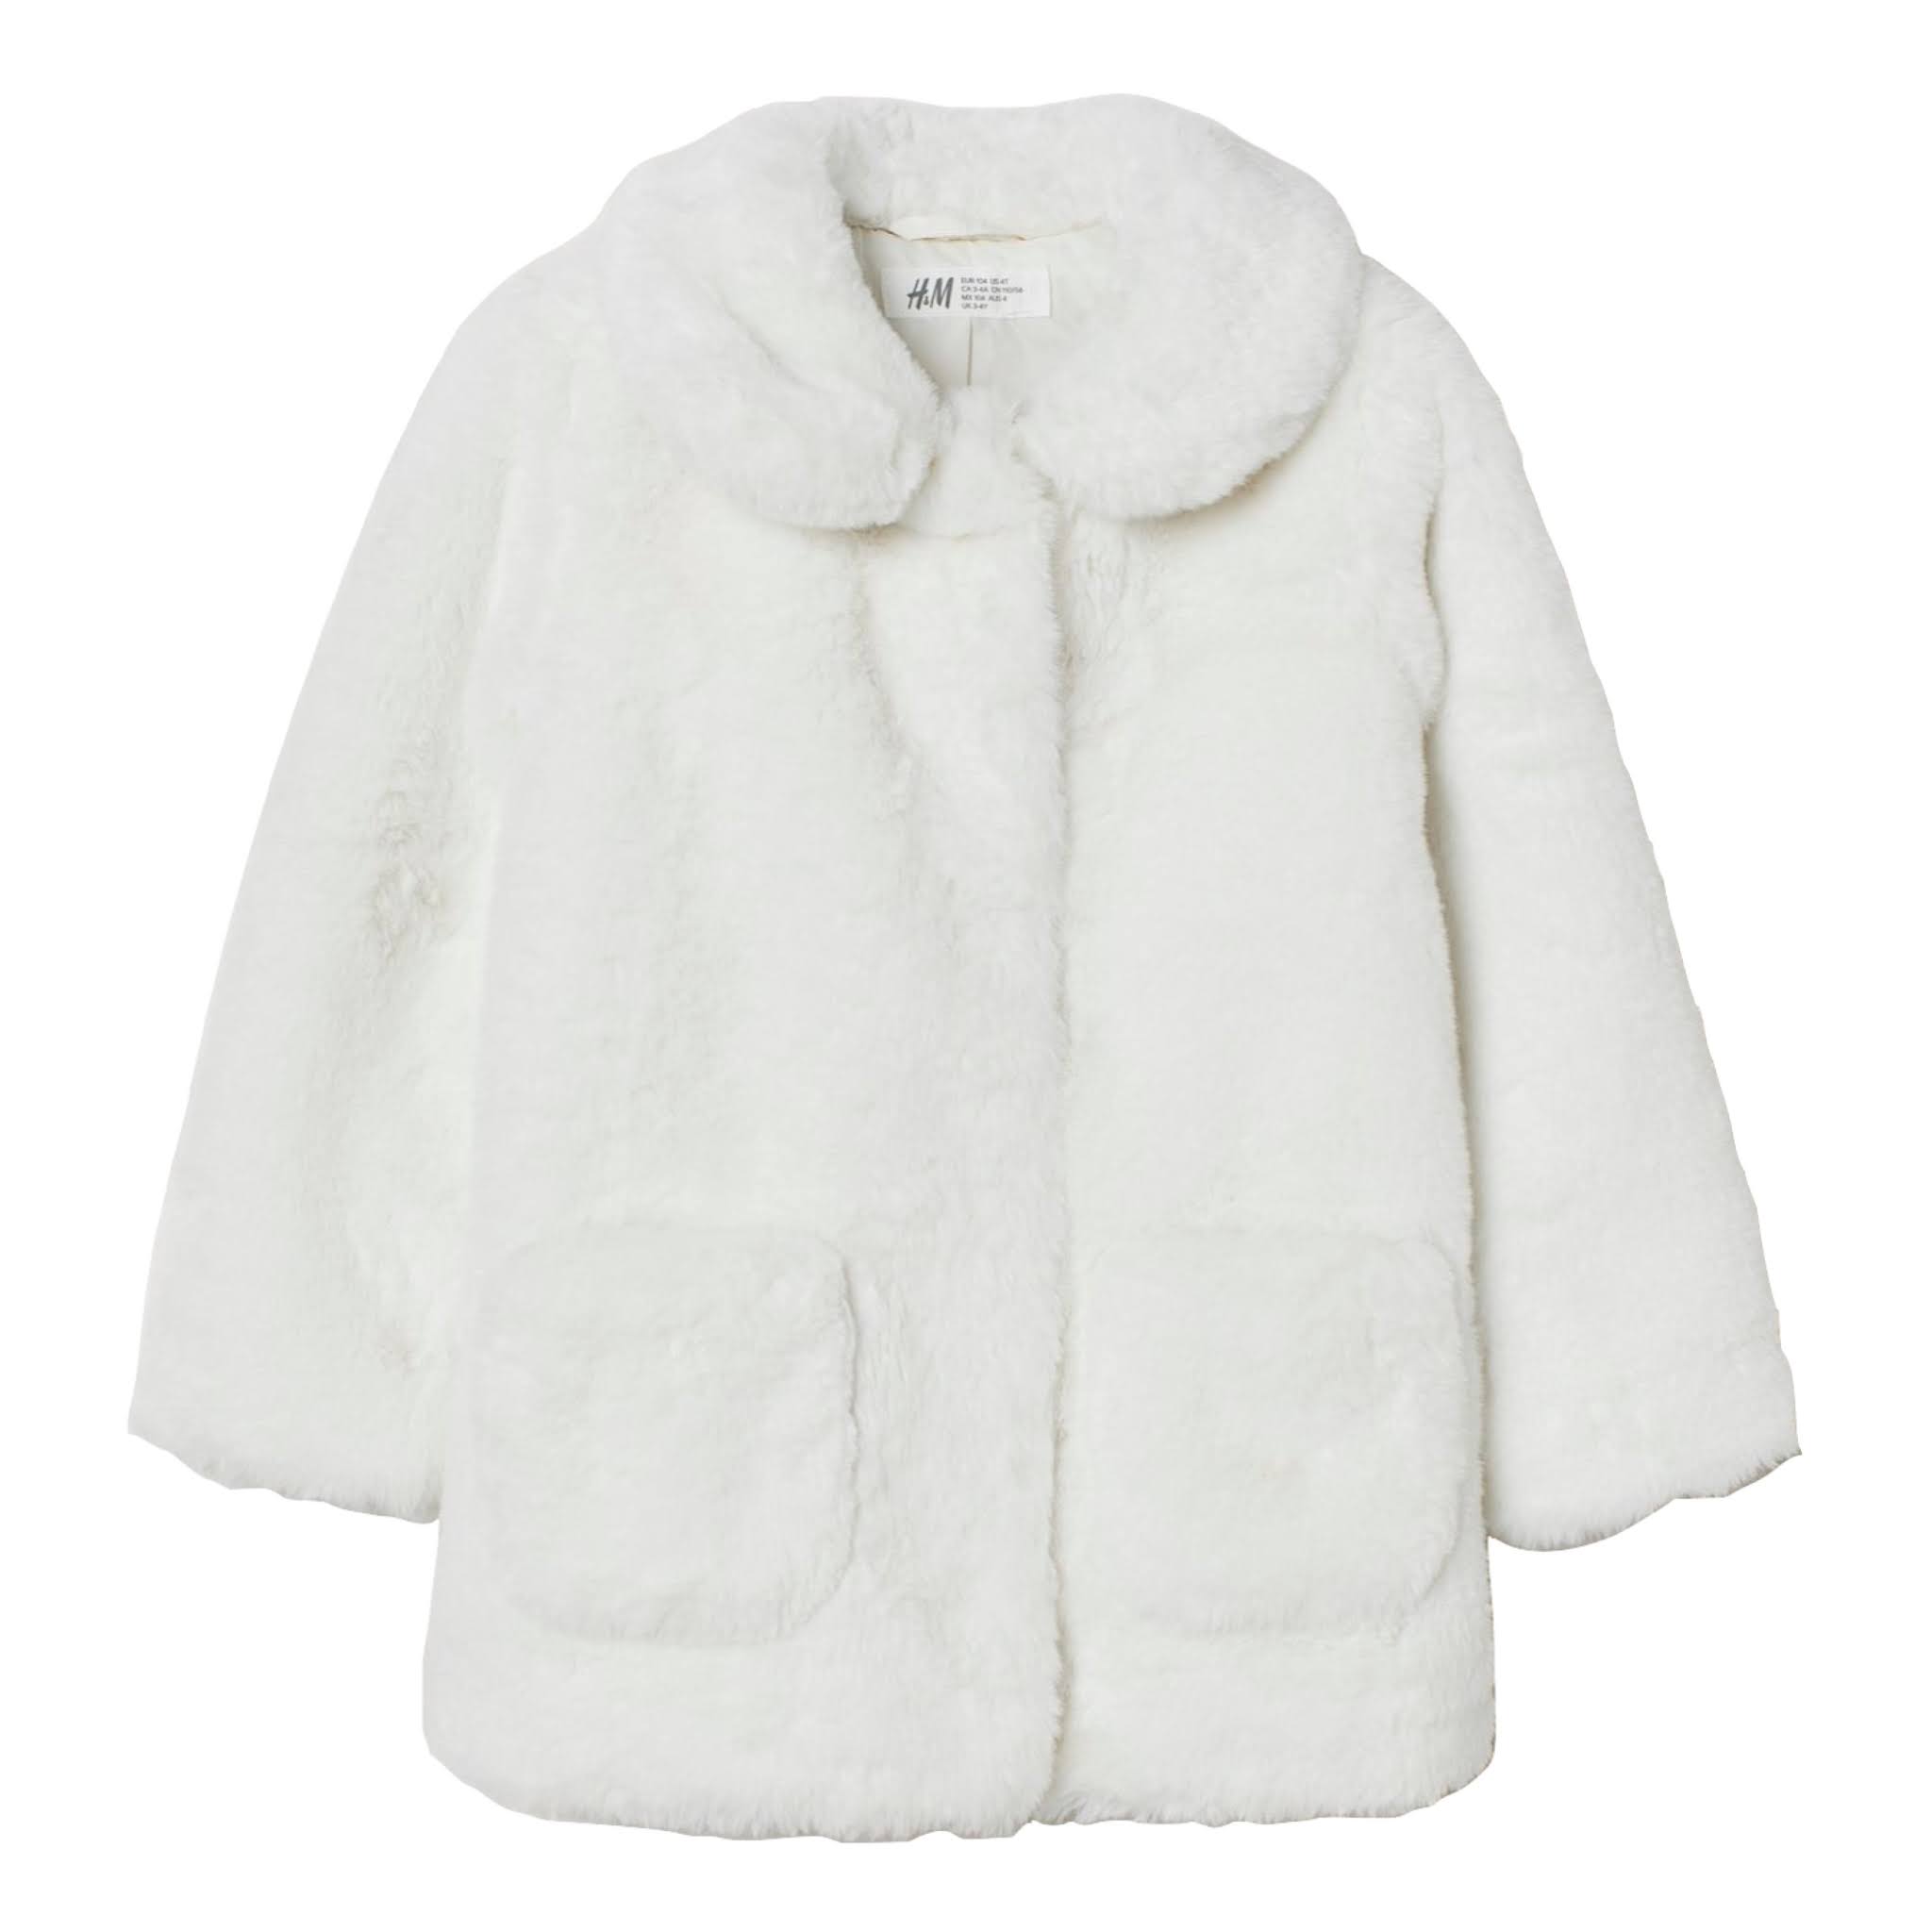 Girls White Teddy Bear Coat from H&M Kids